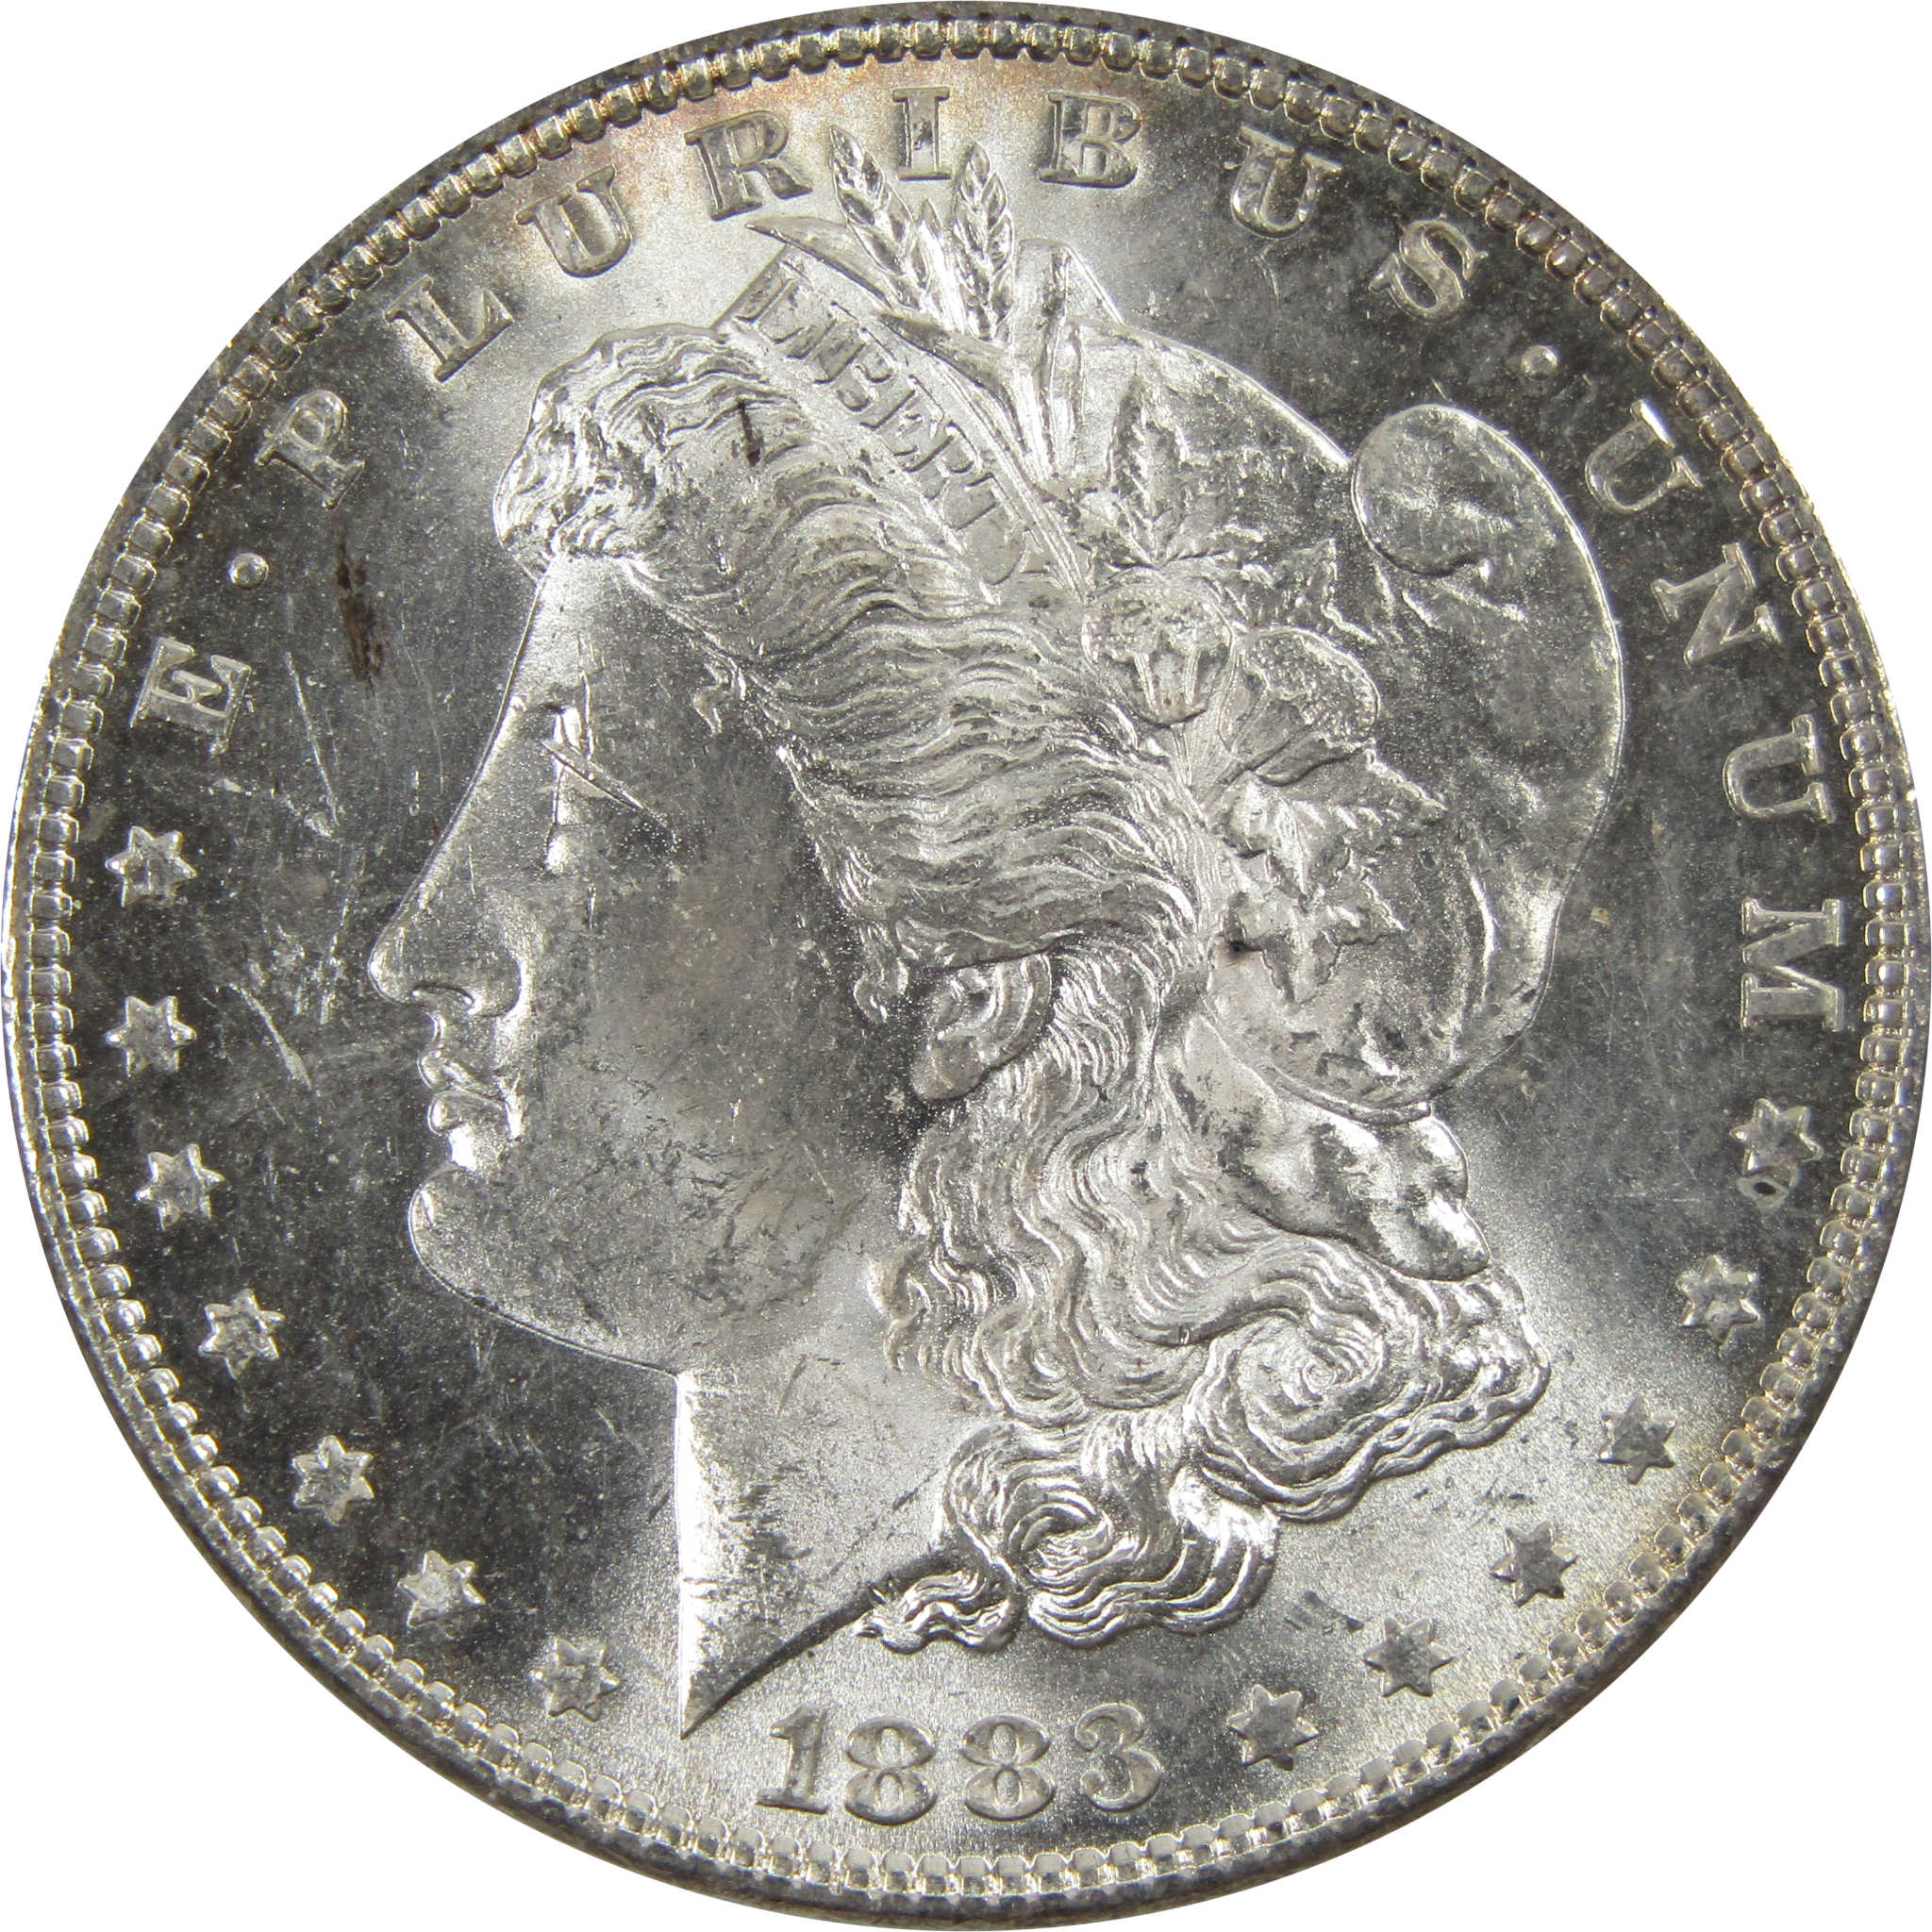 1883 Morgan Dollar BU Uncirculated 90% Silver $1 Coin SKU:I5175 - Morgan coin - Morgan silver dollar - Morgan silver dollar for sale - Profile Coins &amp; Collectibles